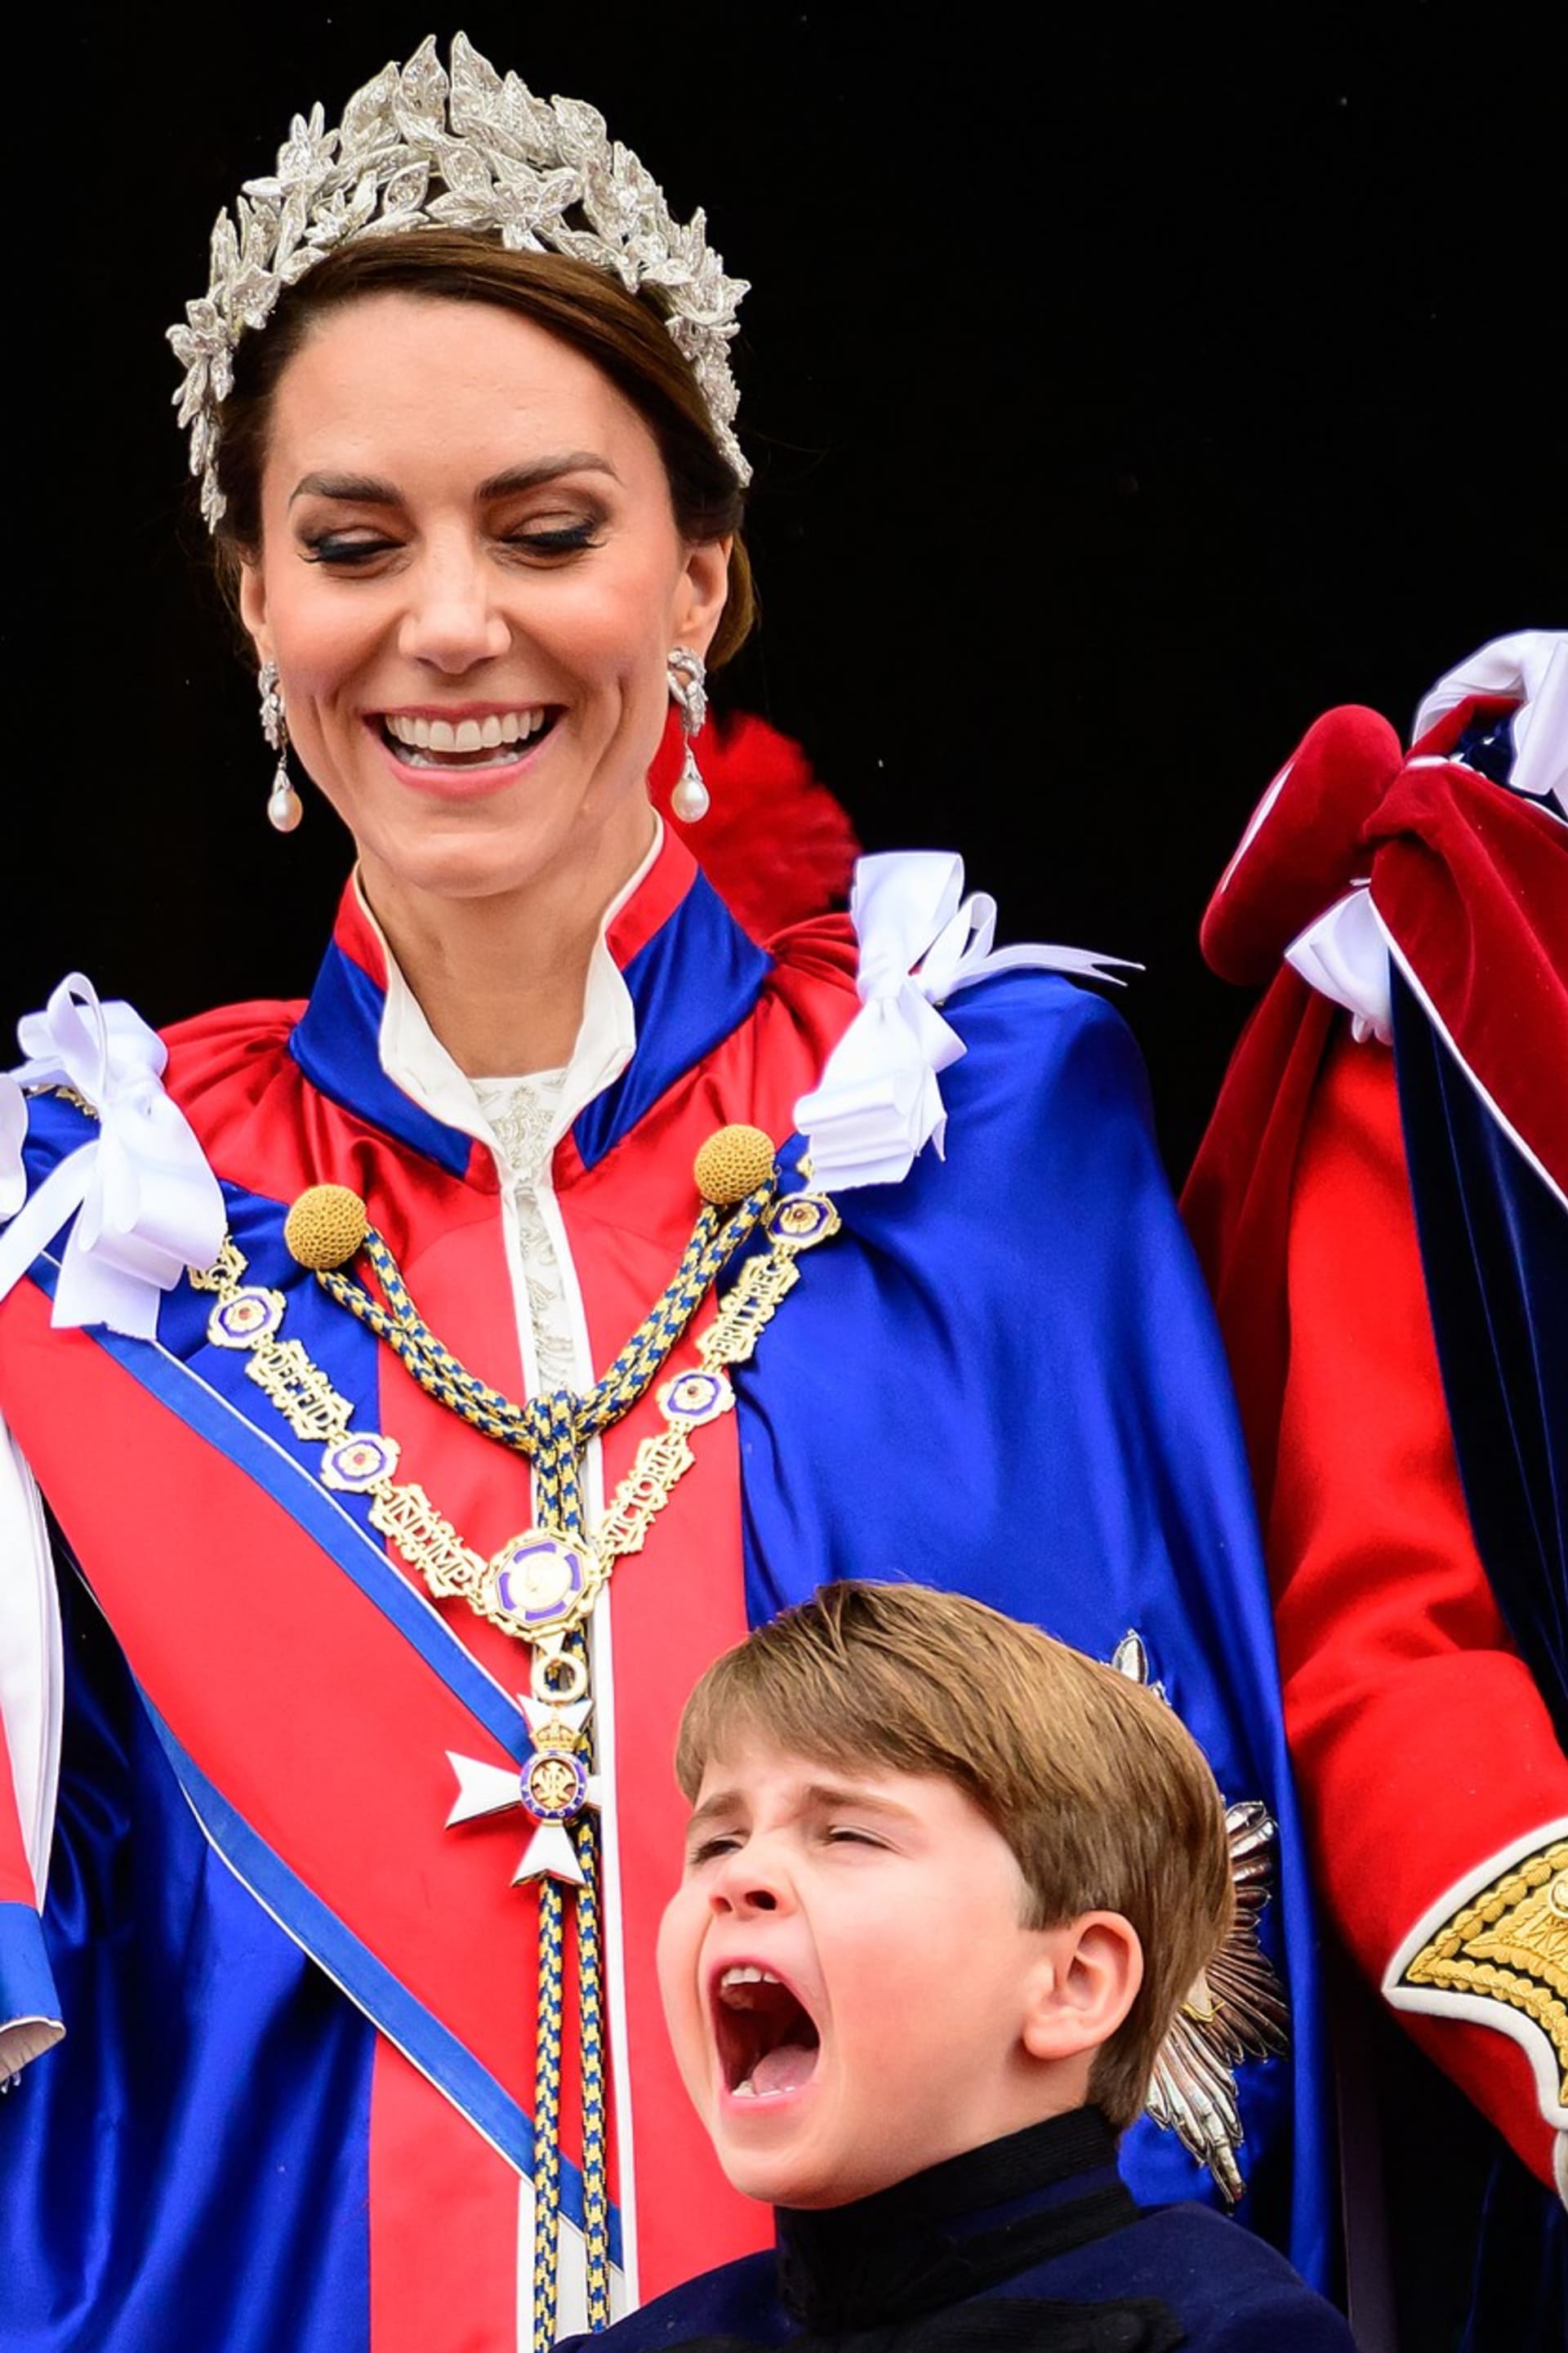 Princezna Catherine, maminka Louise, se jeho úšklebkům smála.